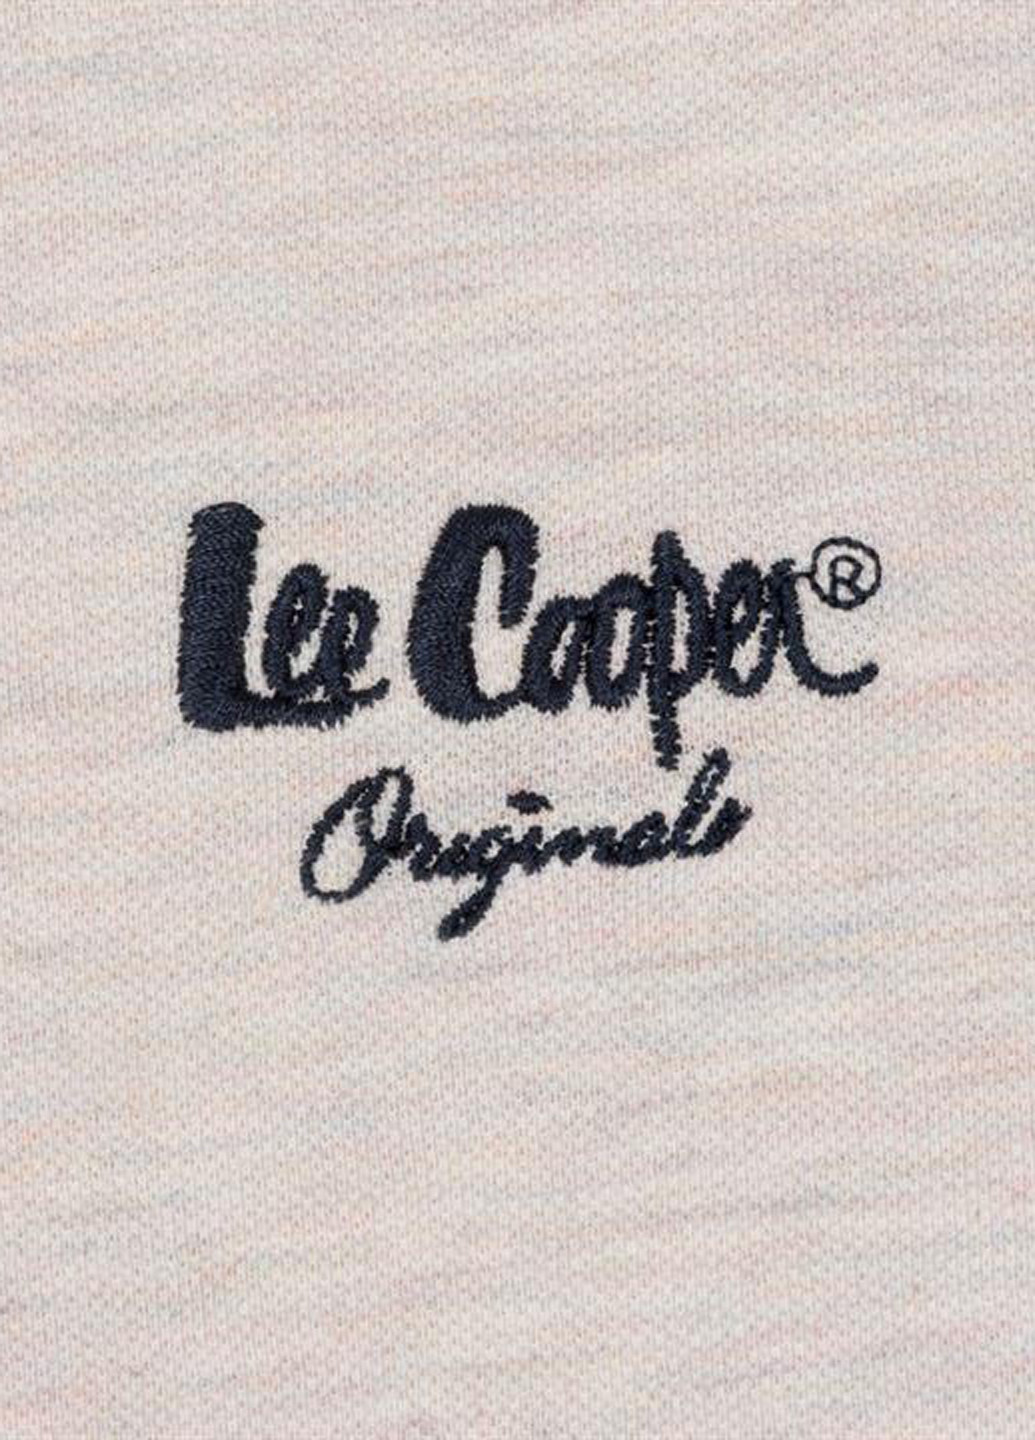 Серая футболка-поло для мужчин Lee Cooper с логотипом